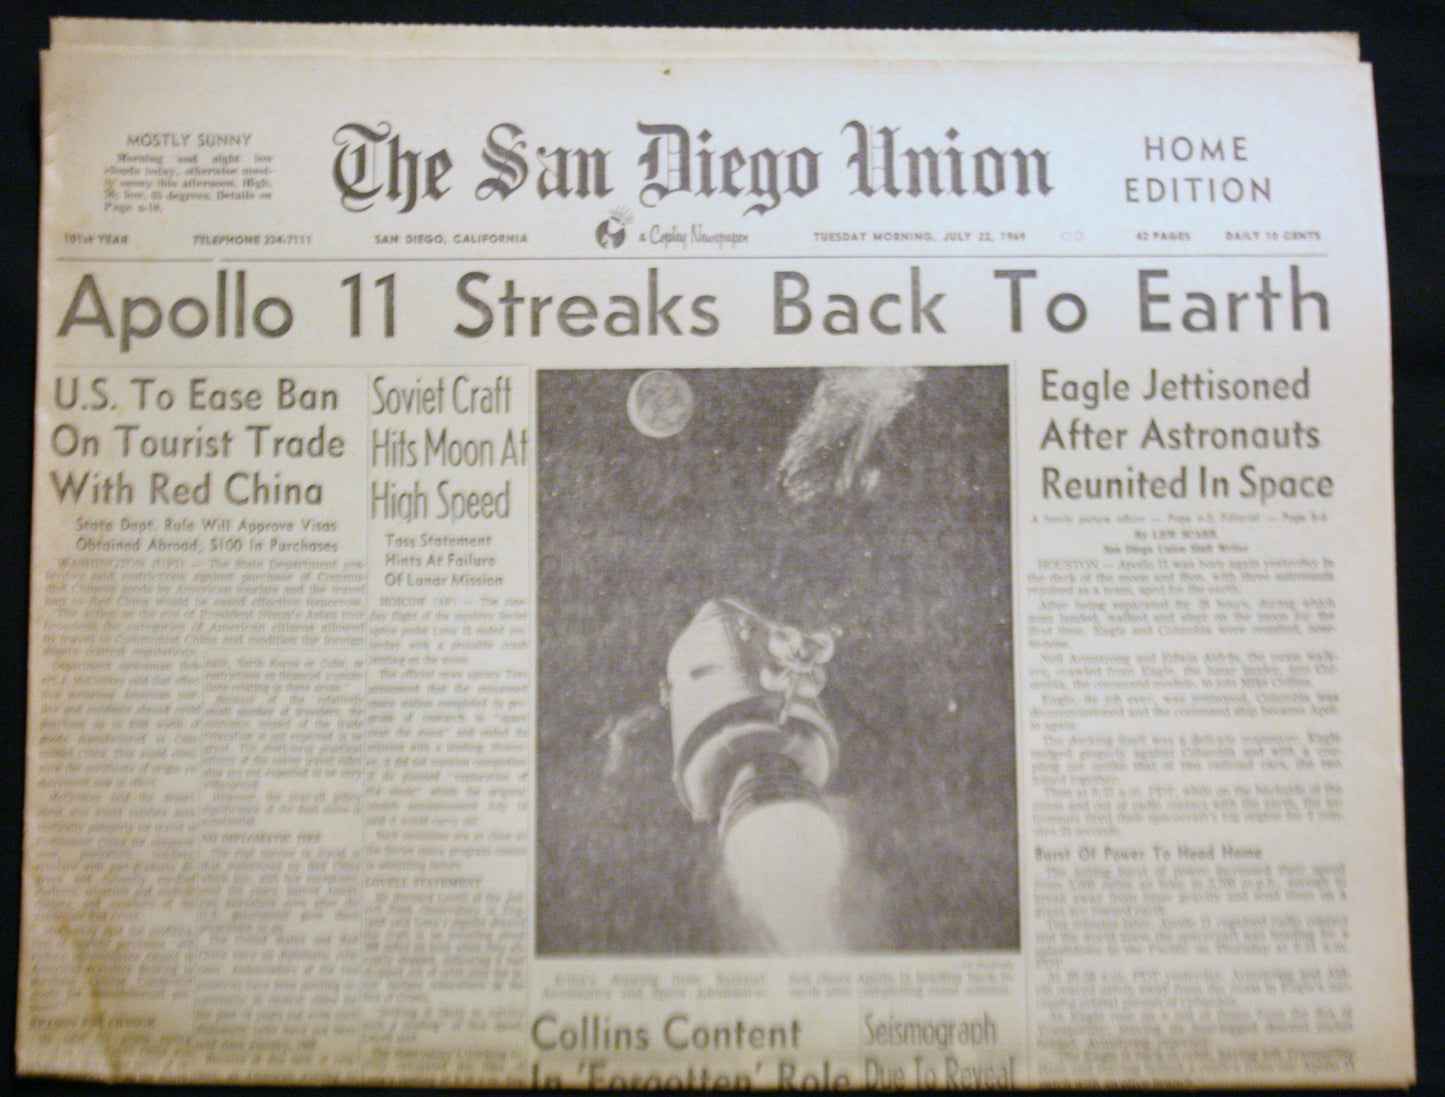 07 23 1969 NEWS San Diego Union - Apollo Back to Earth